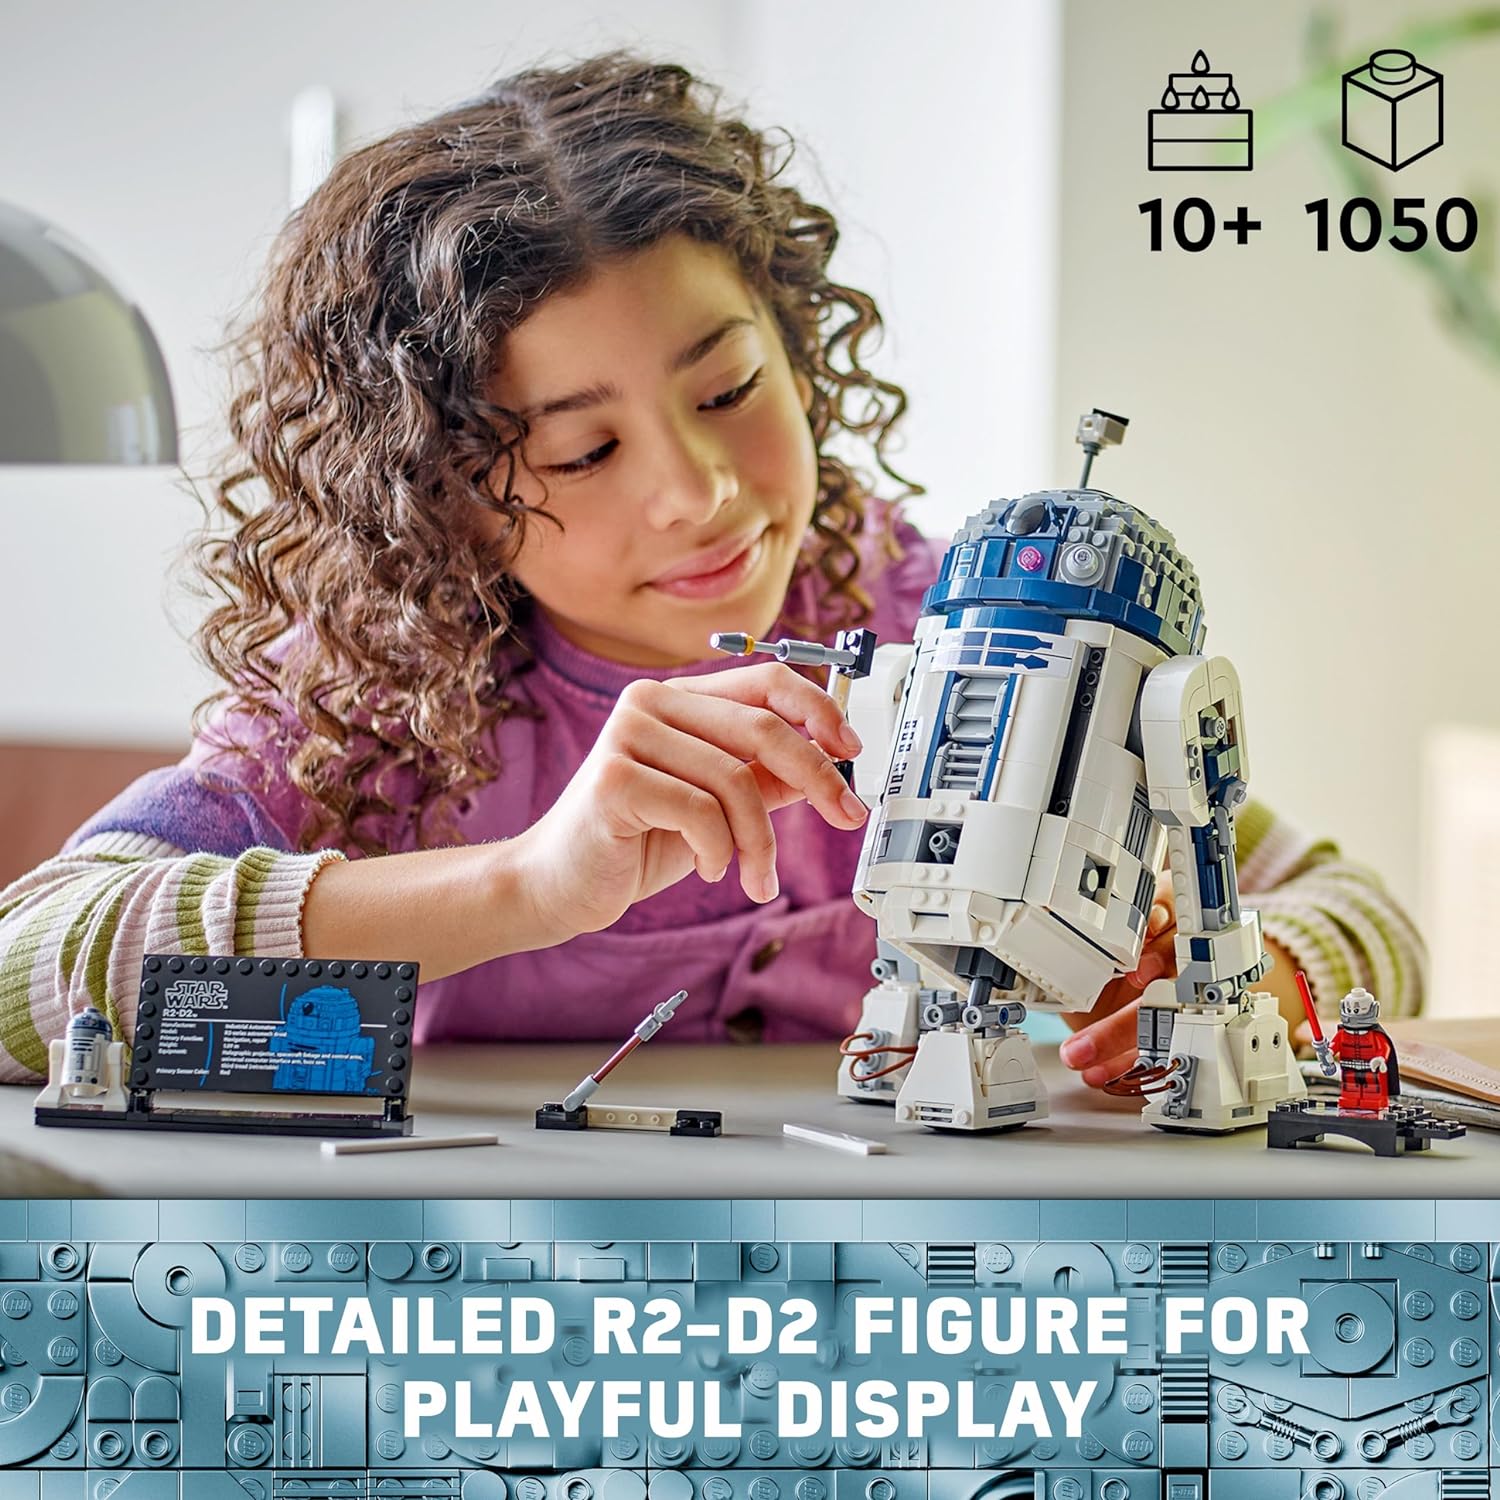 ليجو 75379 ستار وورز R2-D2، شخصية الروبوت المبنية من الطوب، ديكور غرفة ستار وورز القابل للتجميع مع شخصية دارث ملاك الصغيرة الحصرية للذكرى الخامسة والعشرين، هدية لعب إبداعية.